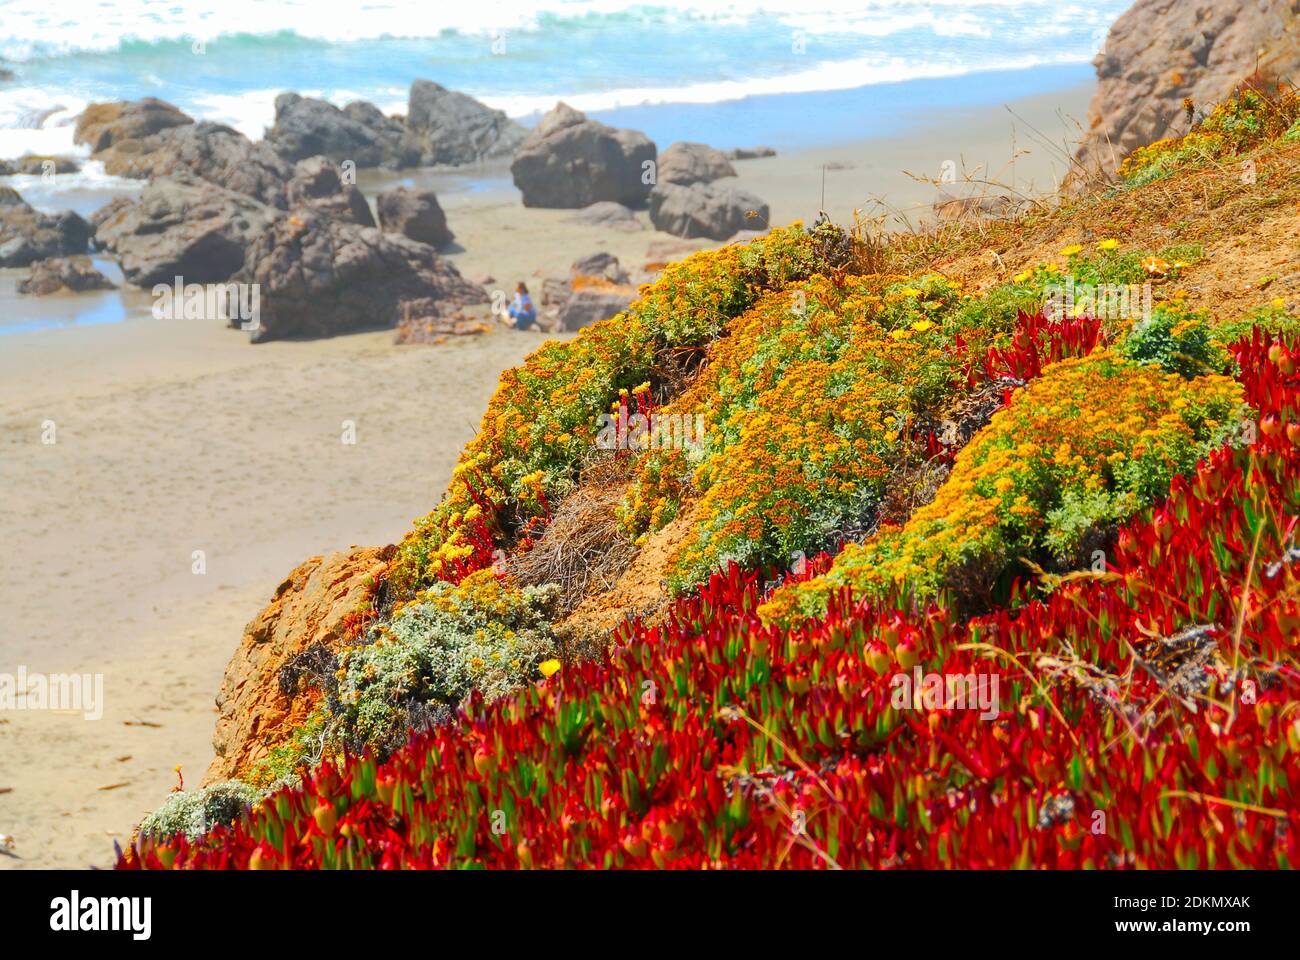 Des fleurs sauvages couvrent la colline menant à une plage avec de grandes roches et du sable, sur l'océan Pacifique, dans le nord de la Californie, aux États-Unis. Banque D'Images